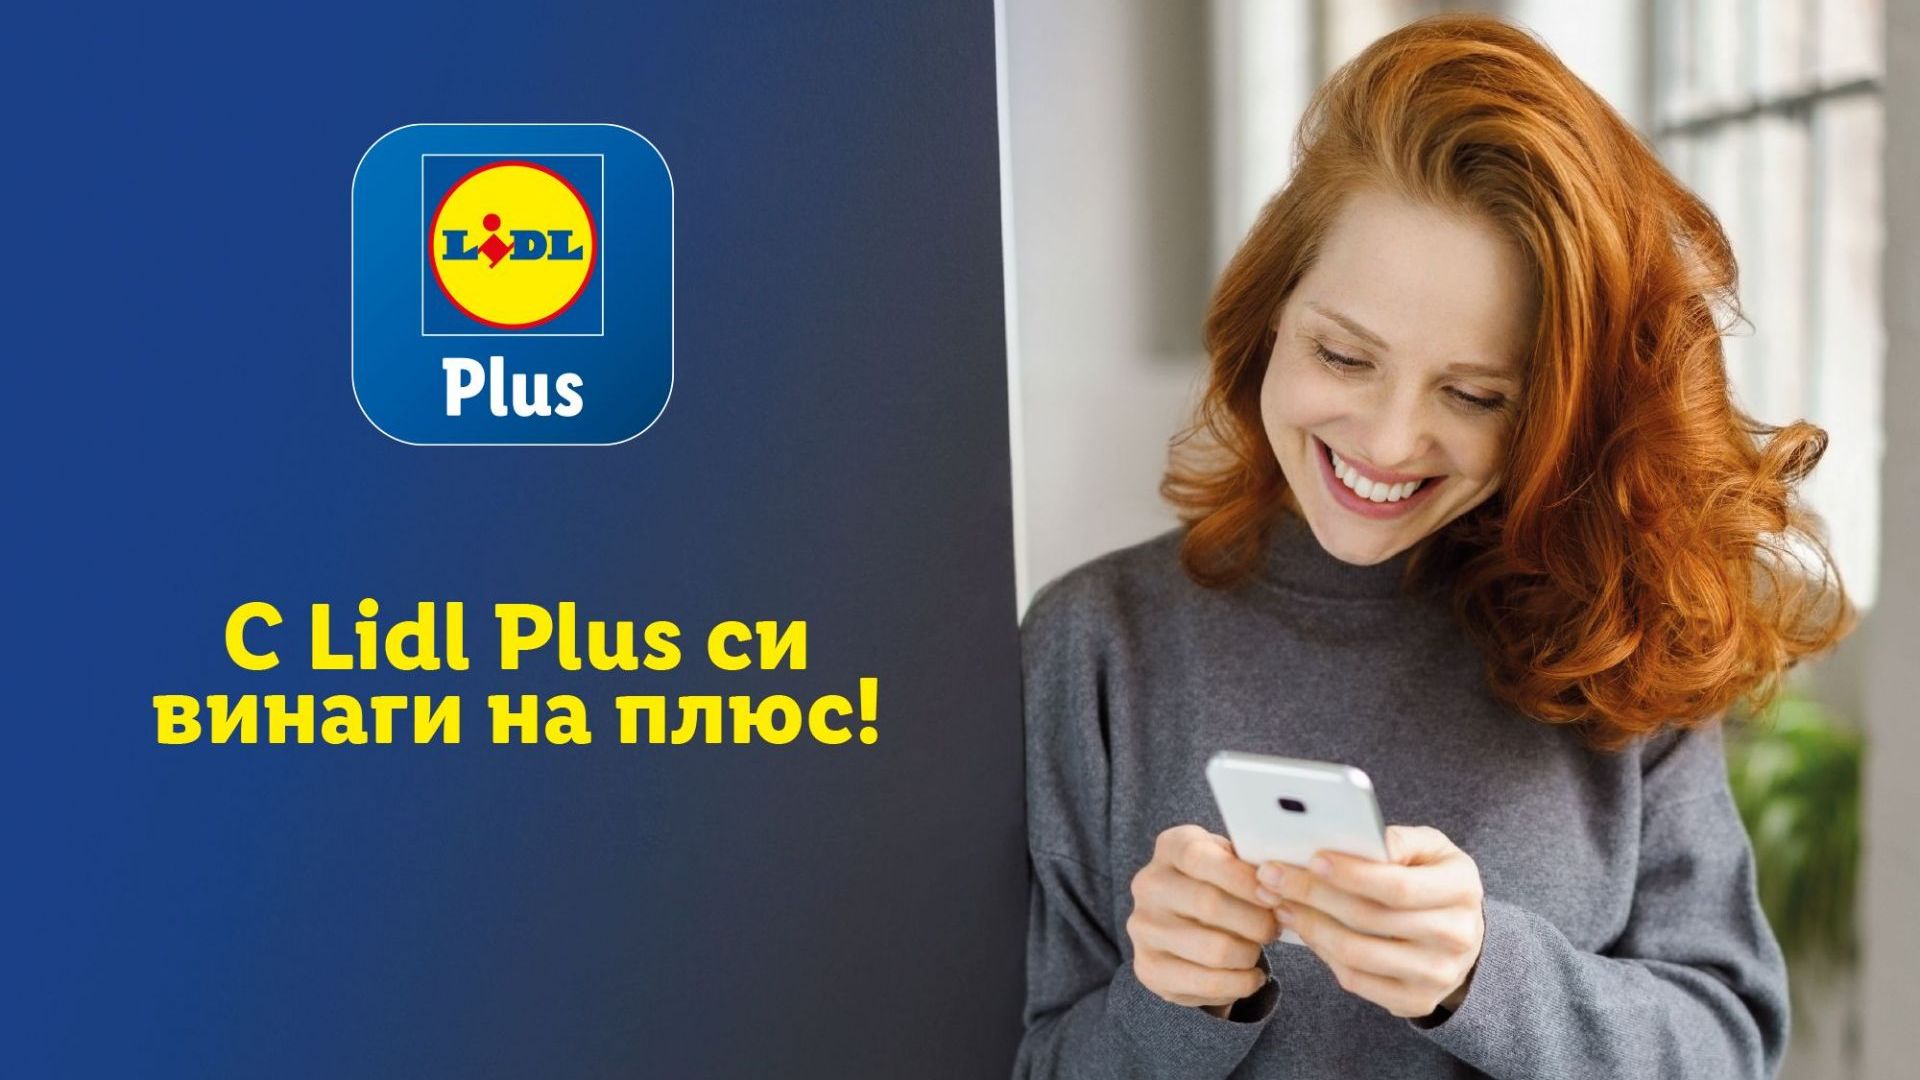 Lidl Plus е най-сваляното приложение  у нас в App Store и Google Play